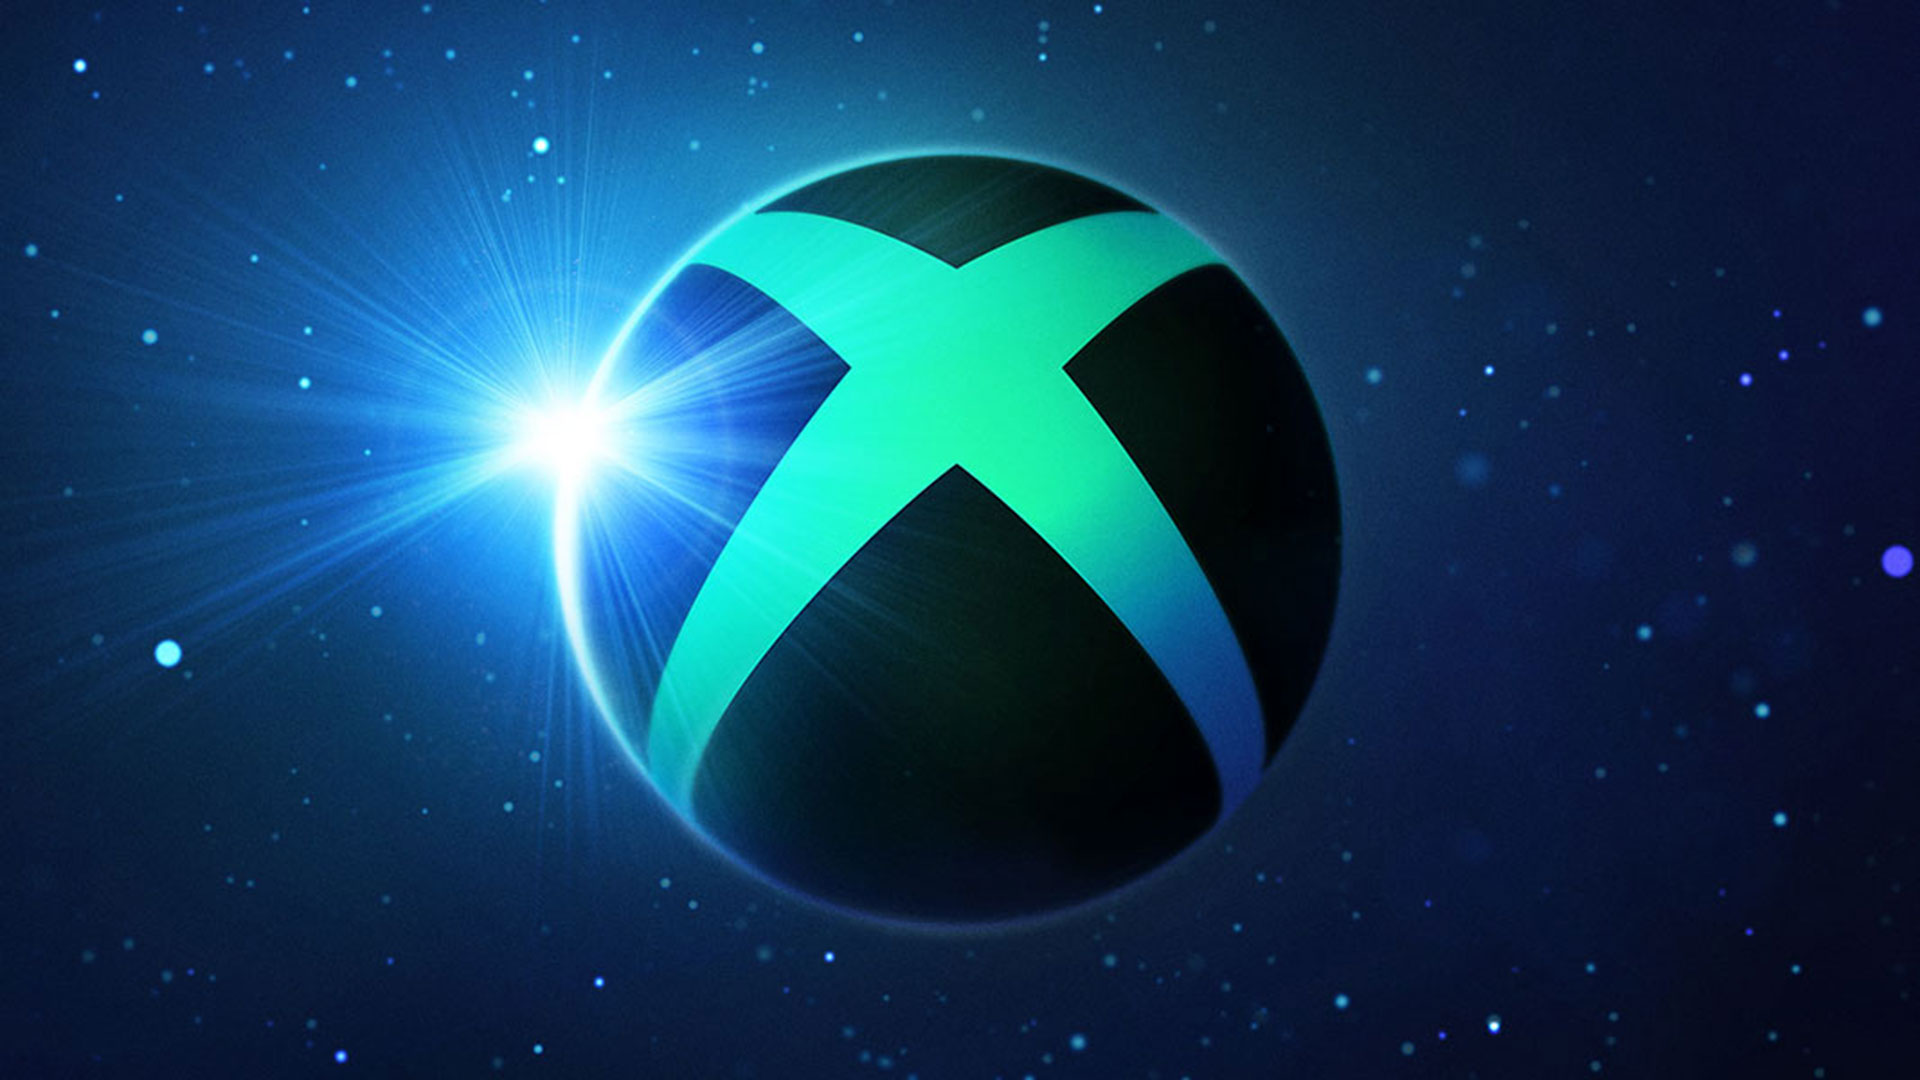 Xbox Game Pass já tem 8 jogos confirmados em outubro